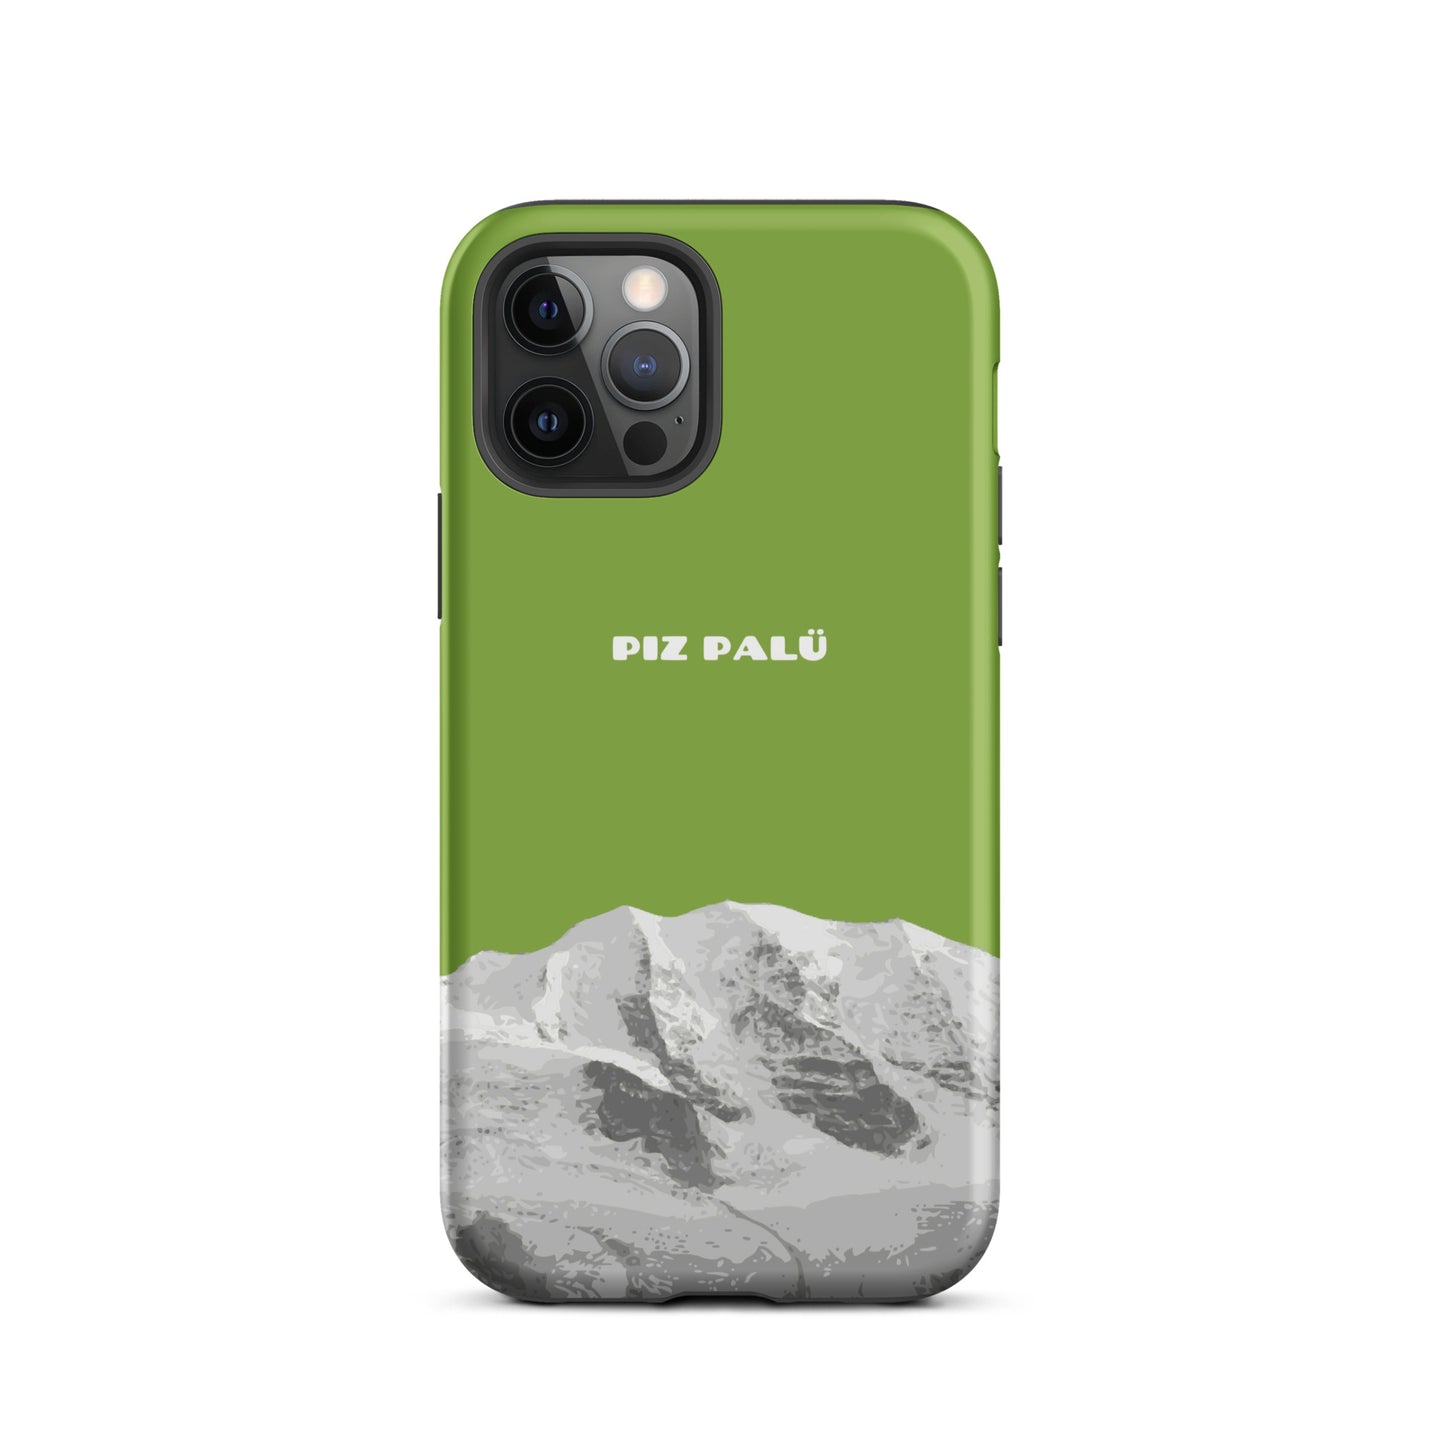 Hülle für das iPhone 12 Pro von Apple in der Farbe Gelbgrün, dass den Piz Palü in Graubünden zeigt. 